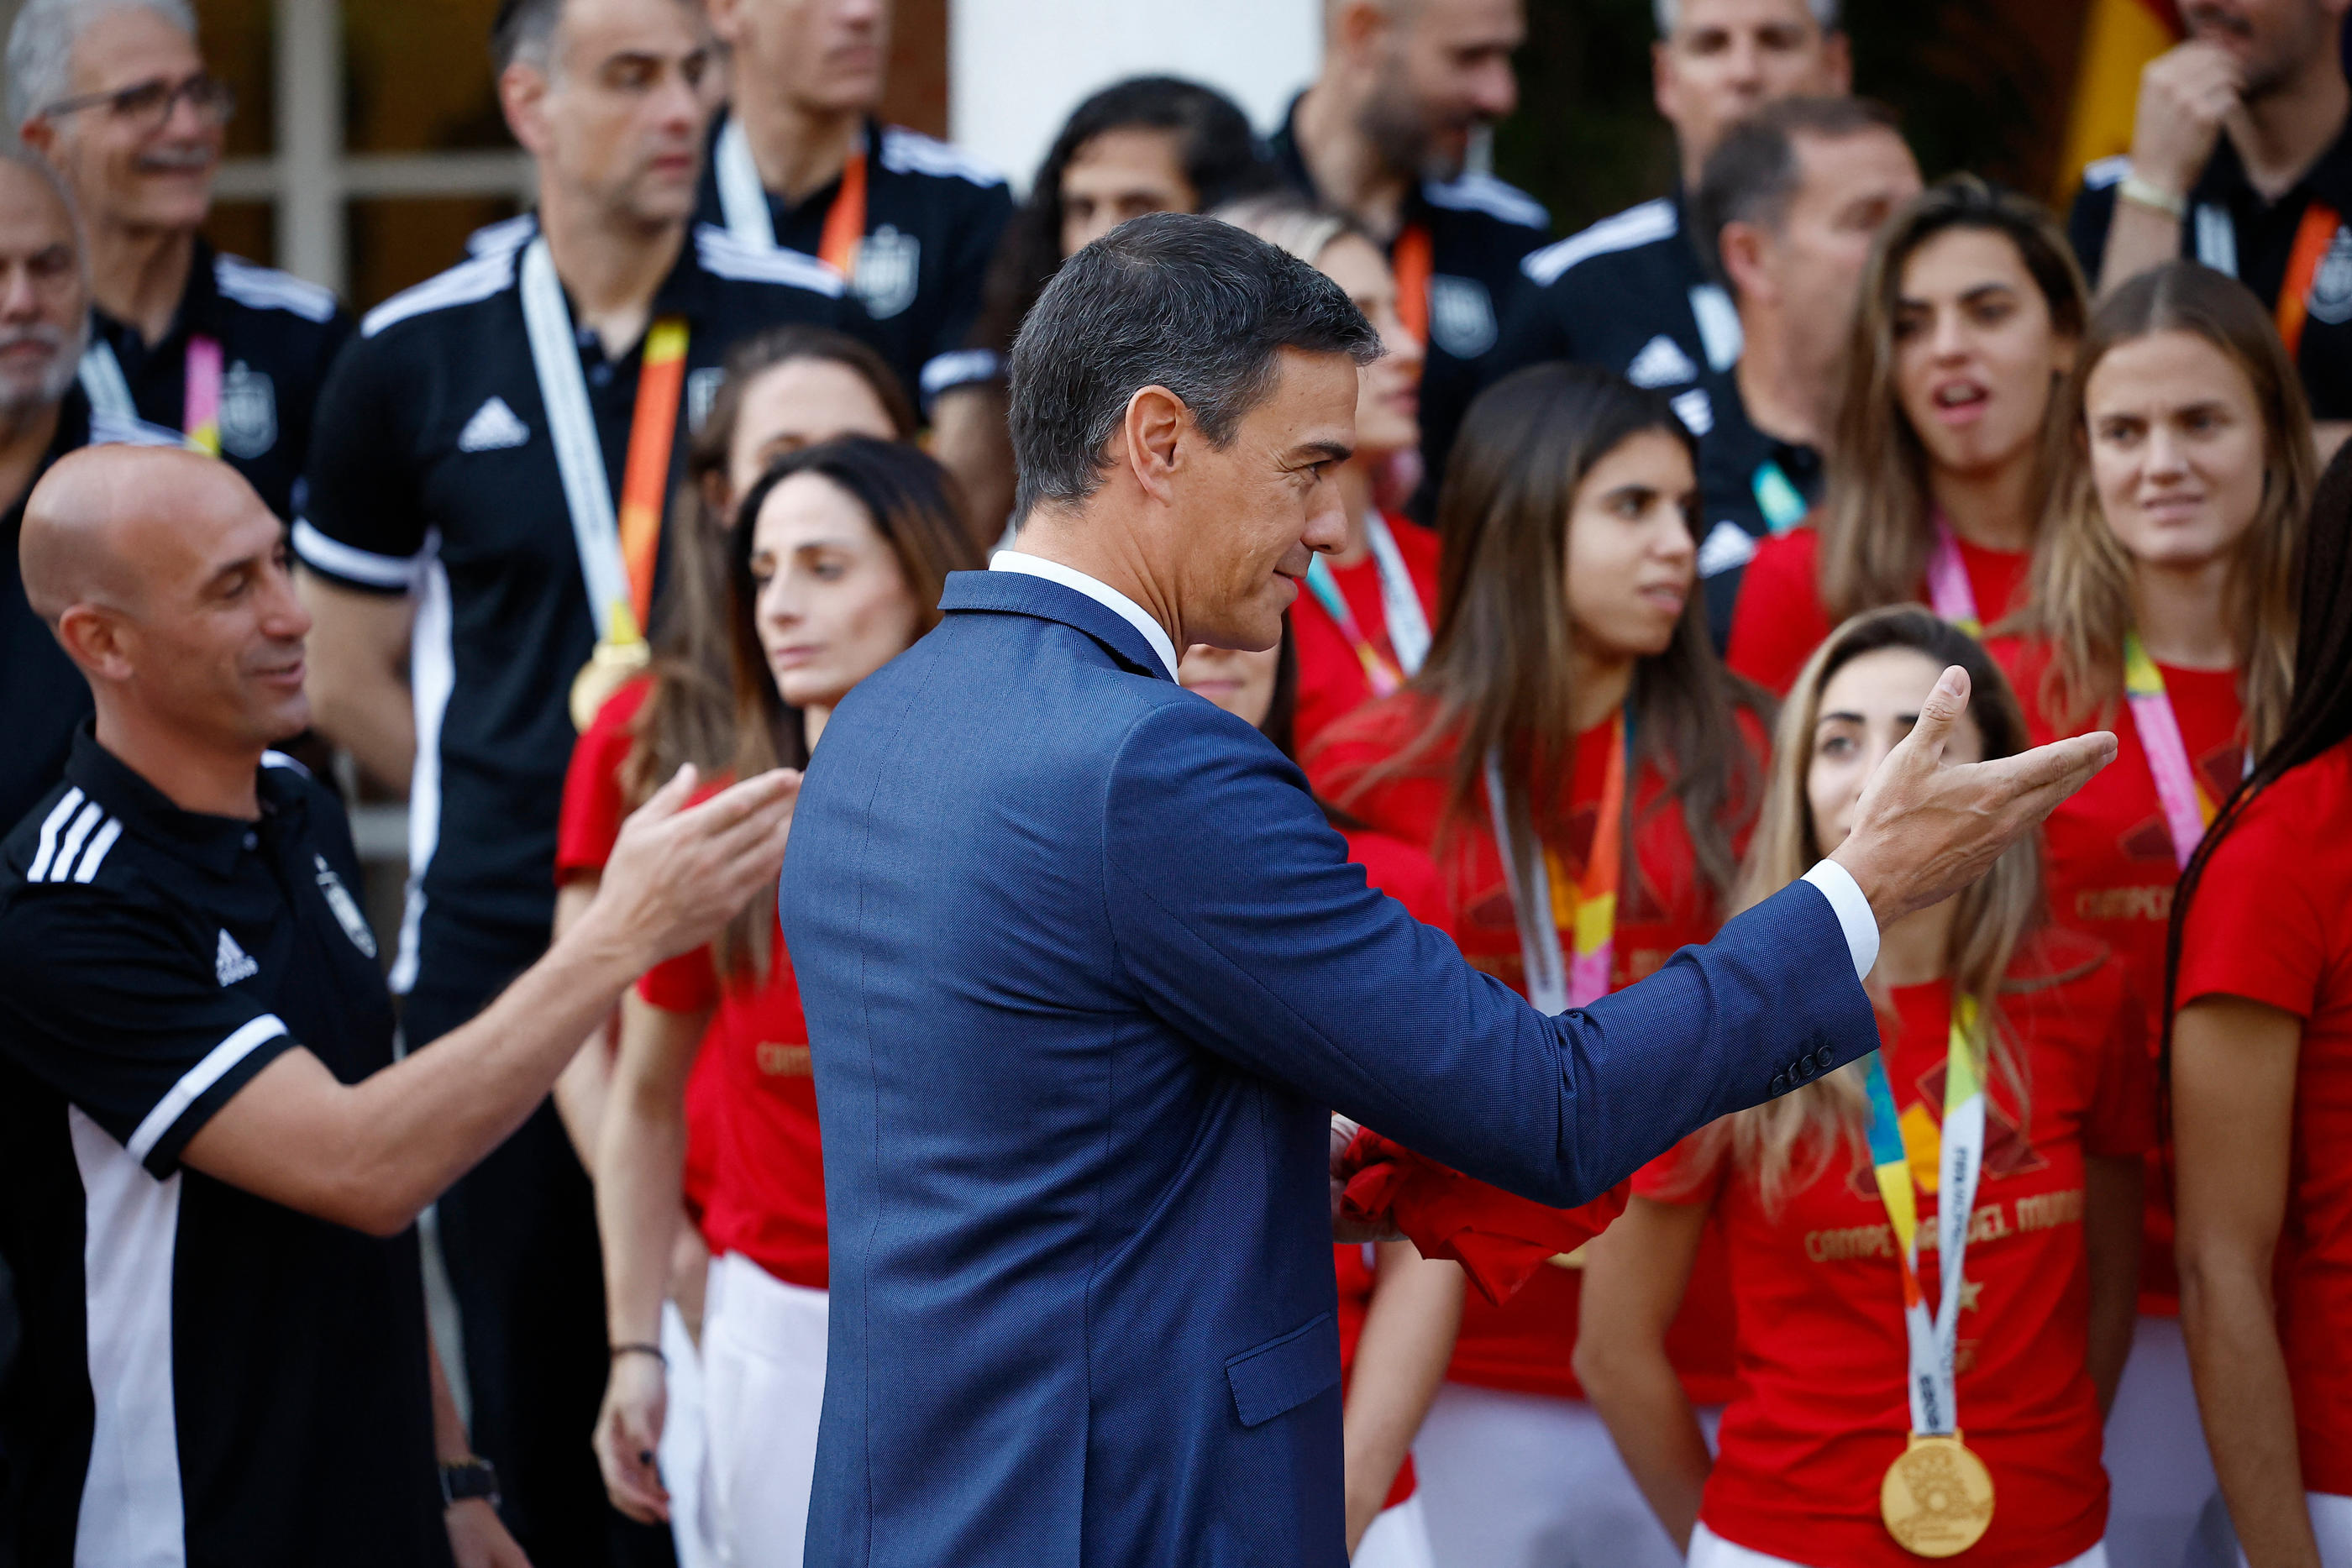 Le Premier ministre espagnol, Pedro Sanchez (au premier plan) a régi, ce mardi en conférence de presse, au baiser forcé de Luis Rubiales (à gauche) sur la joueuse Jennifer Hermoso. Photo REUTERS/Juan Medina